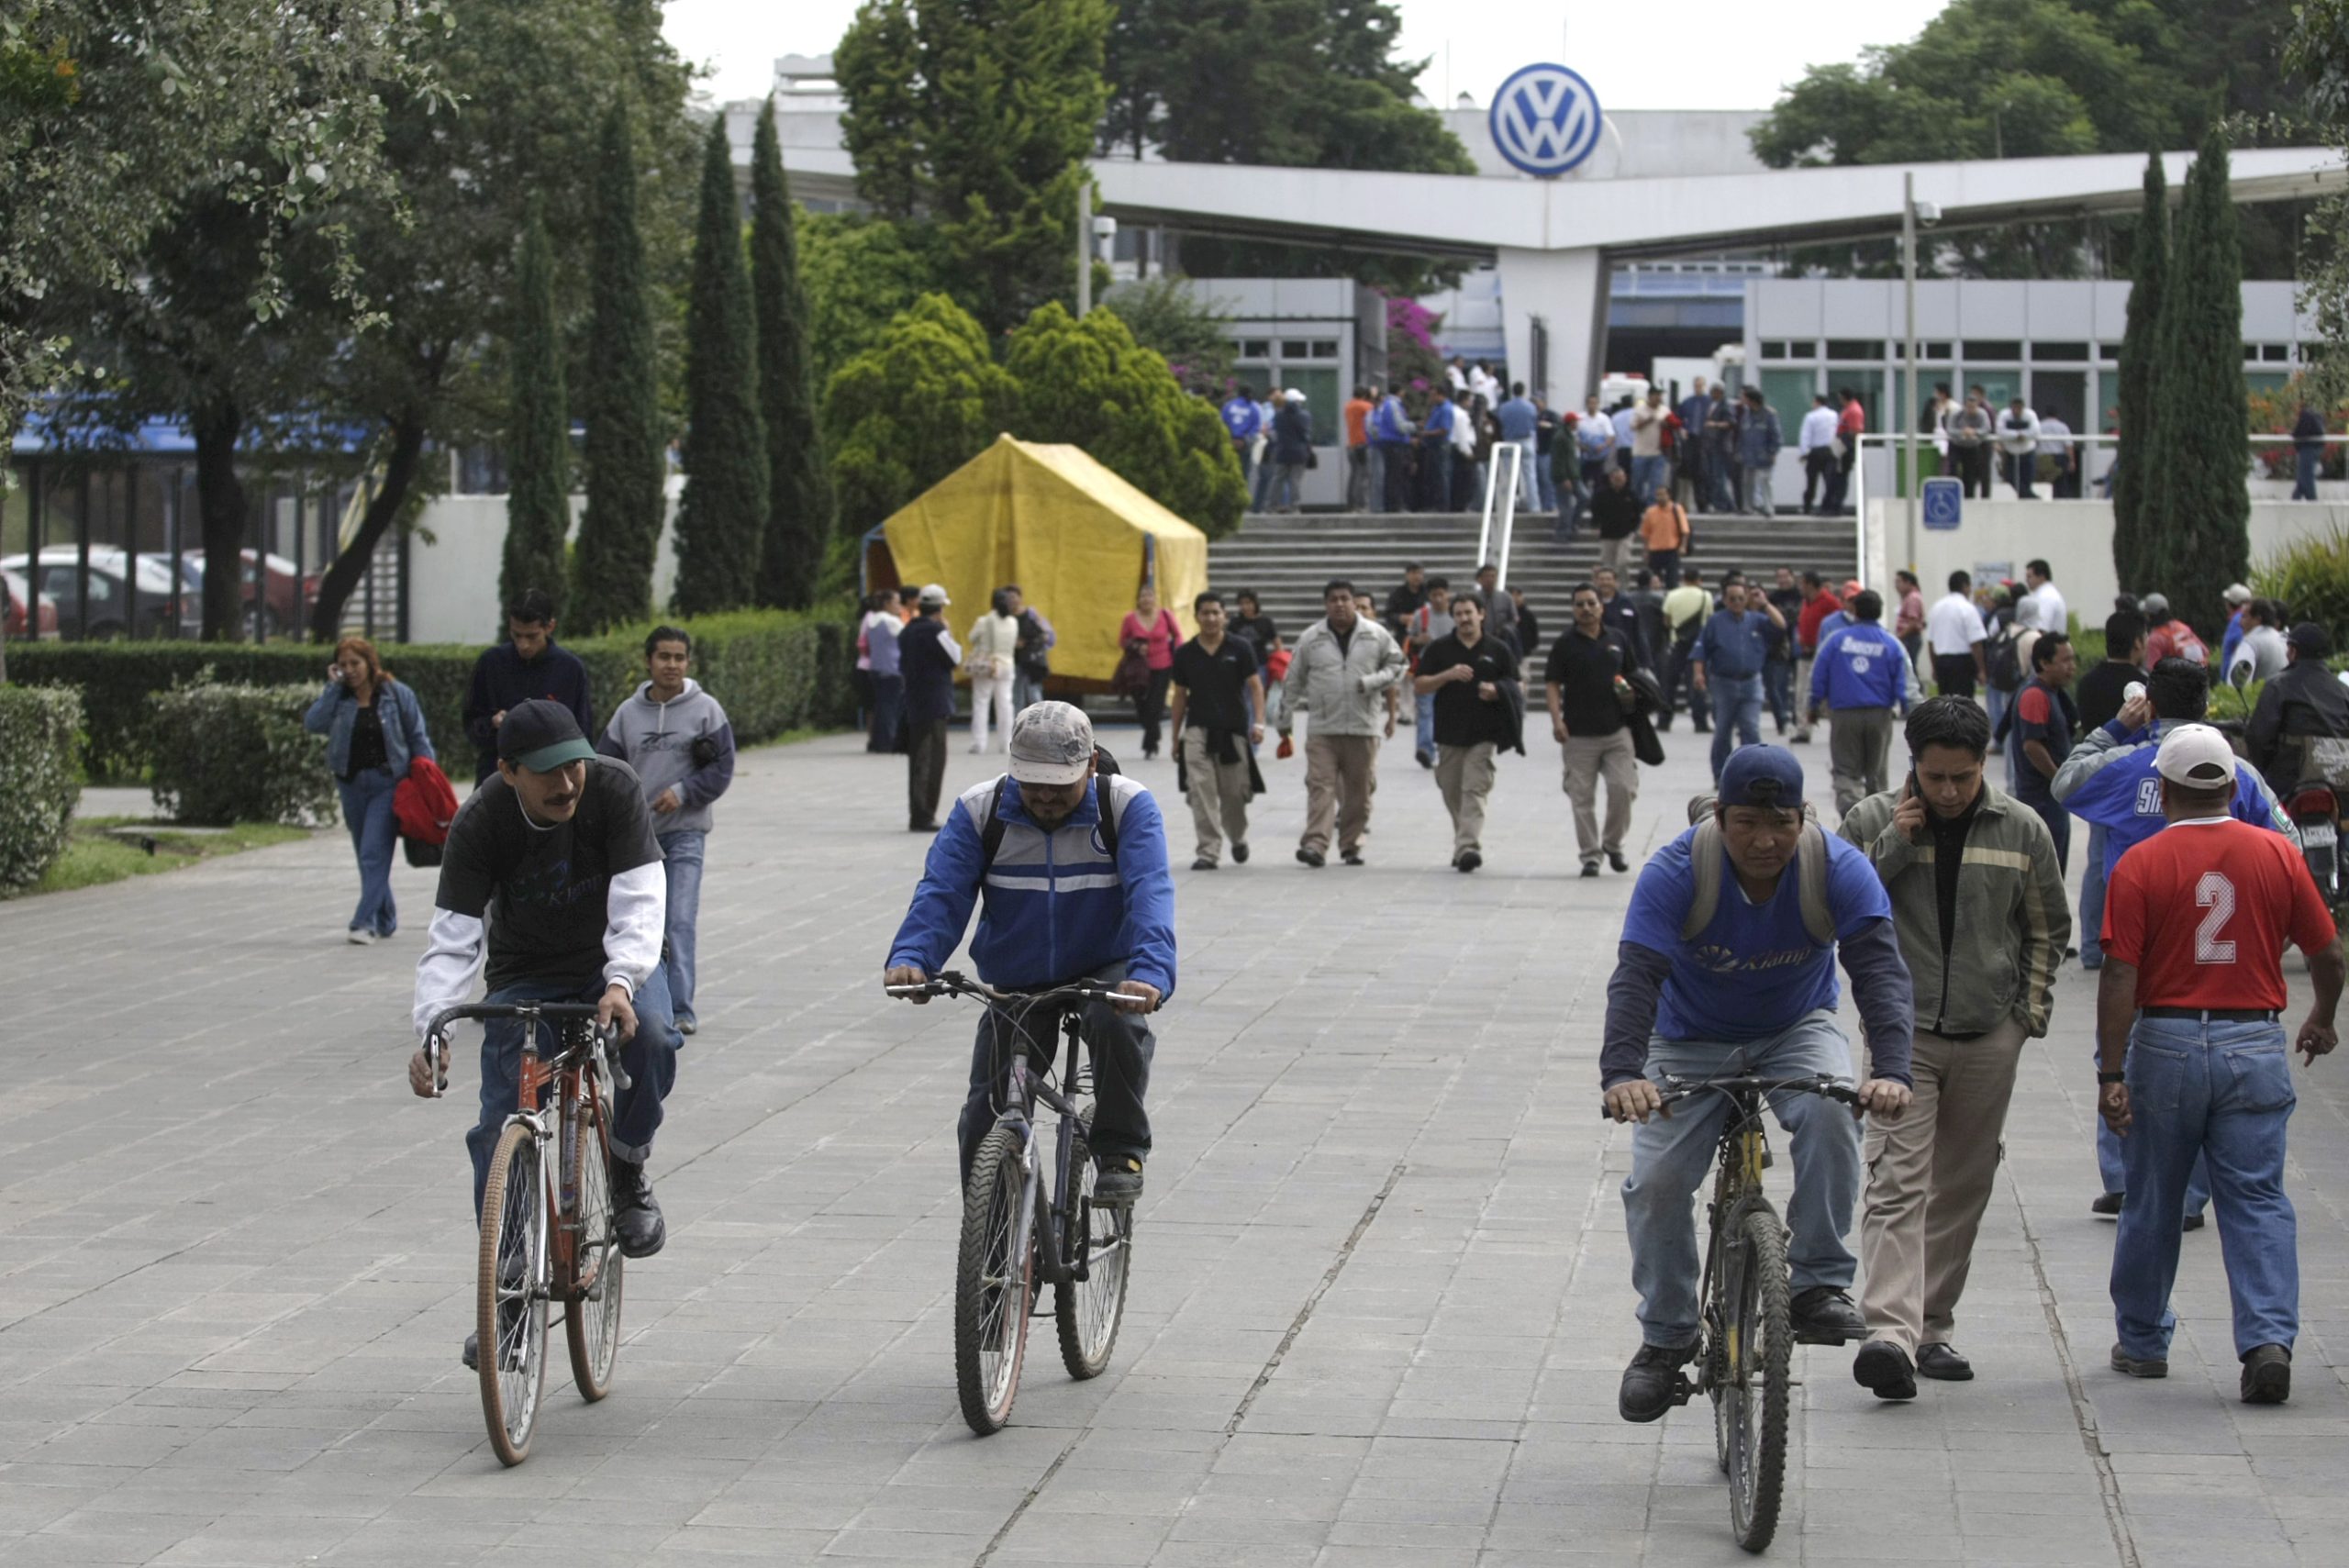 Alistan tercera consulta de VW; planta mantiene el 11%